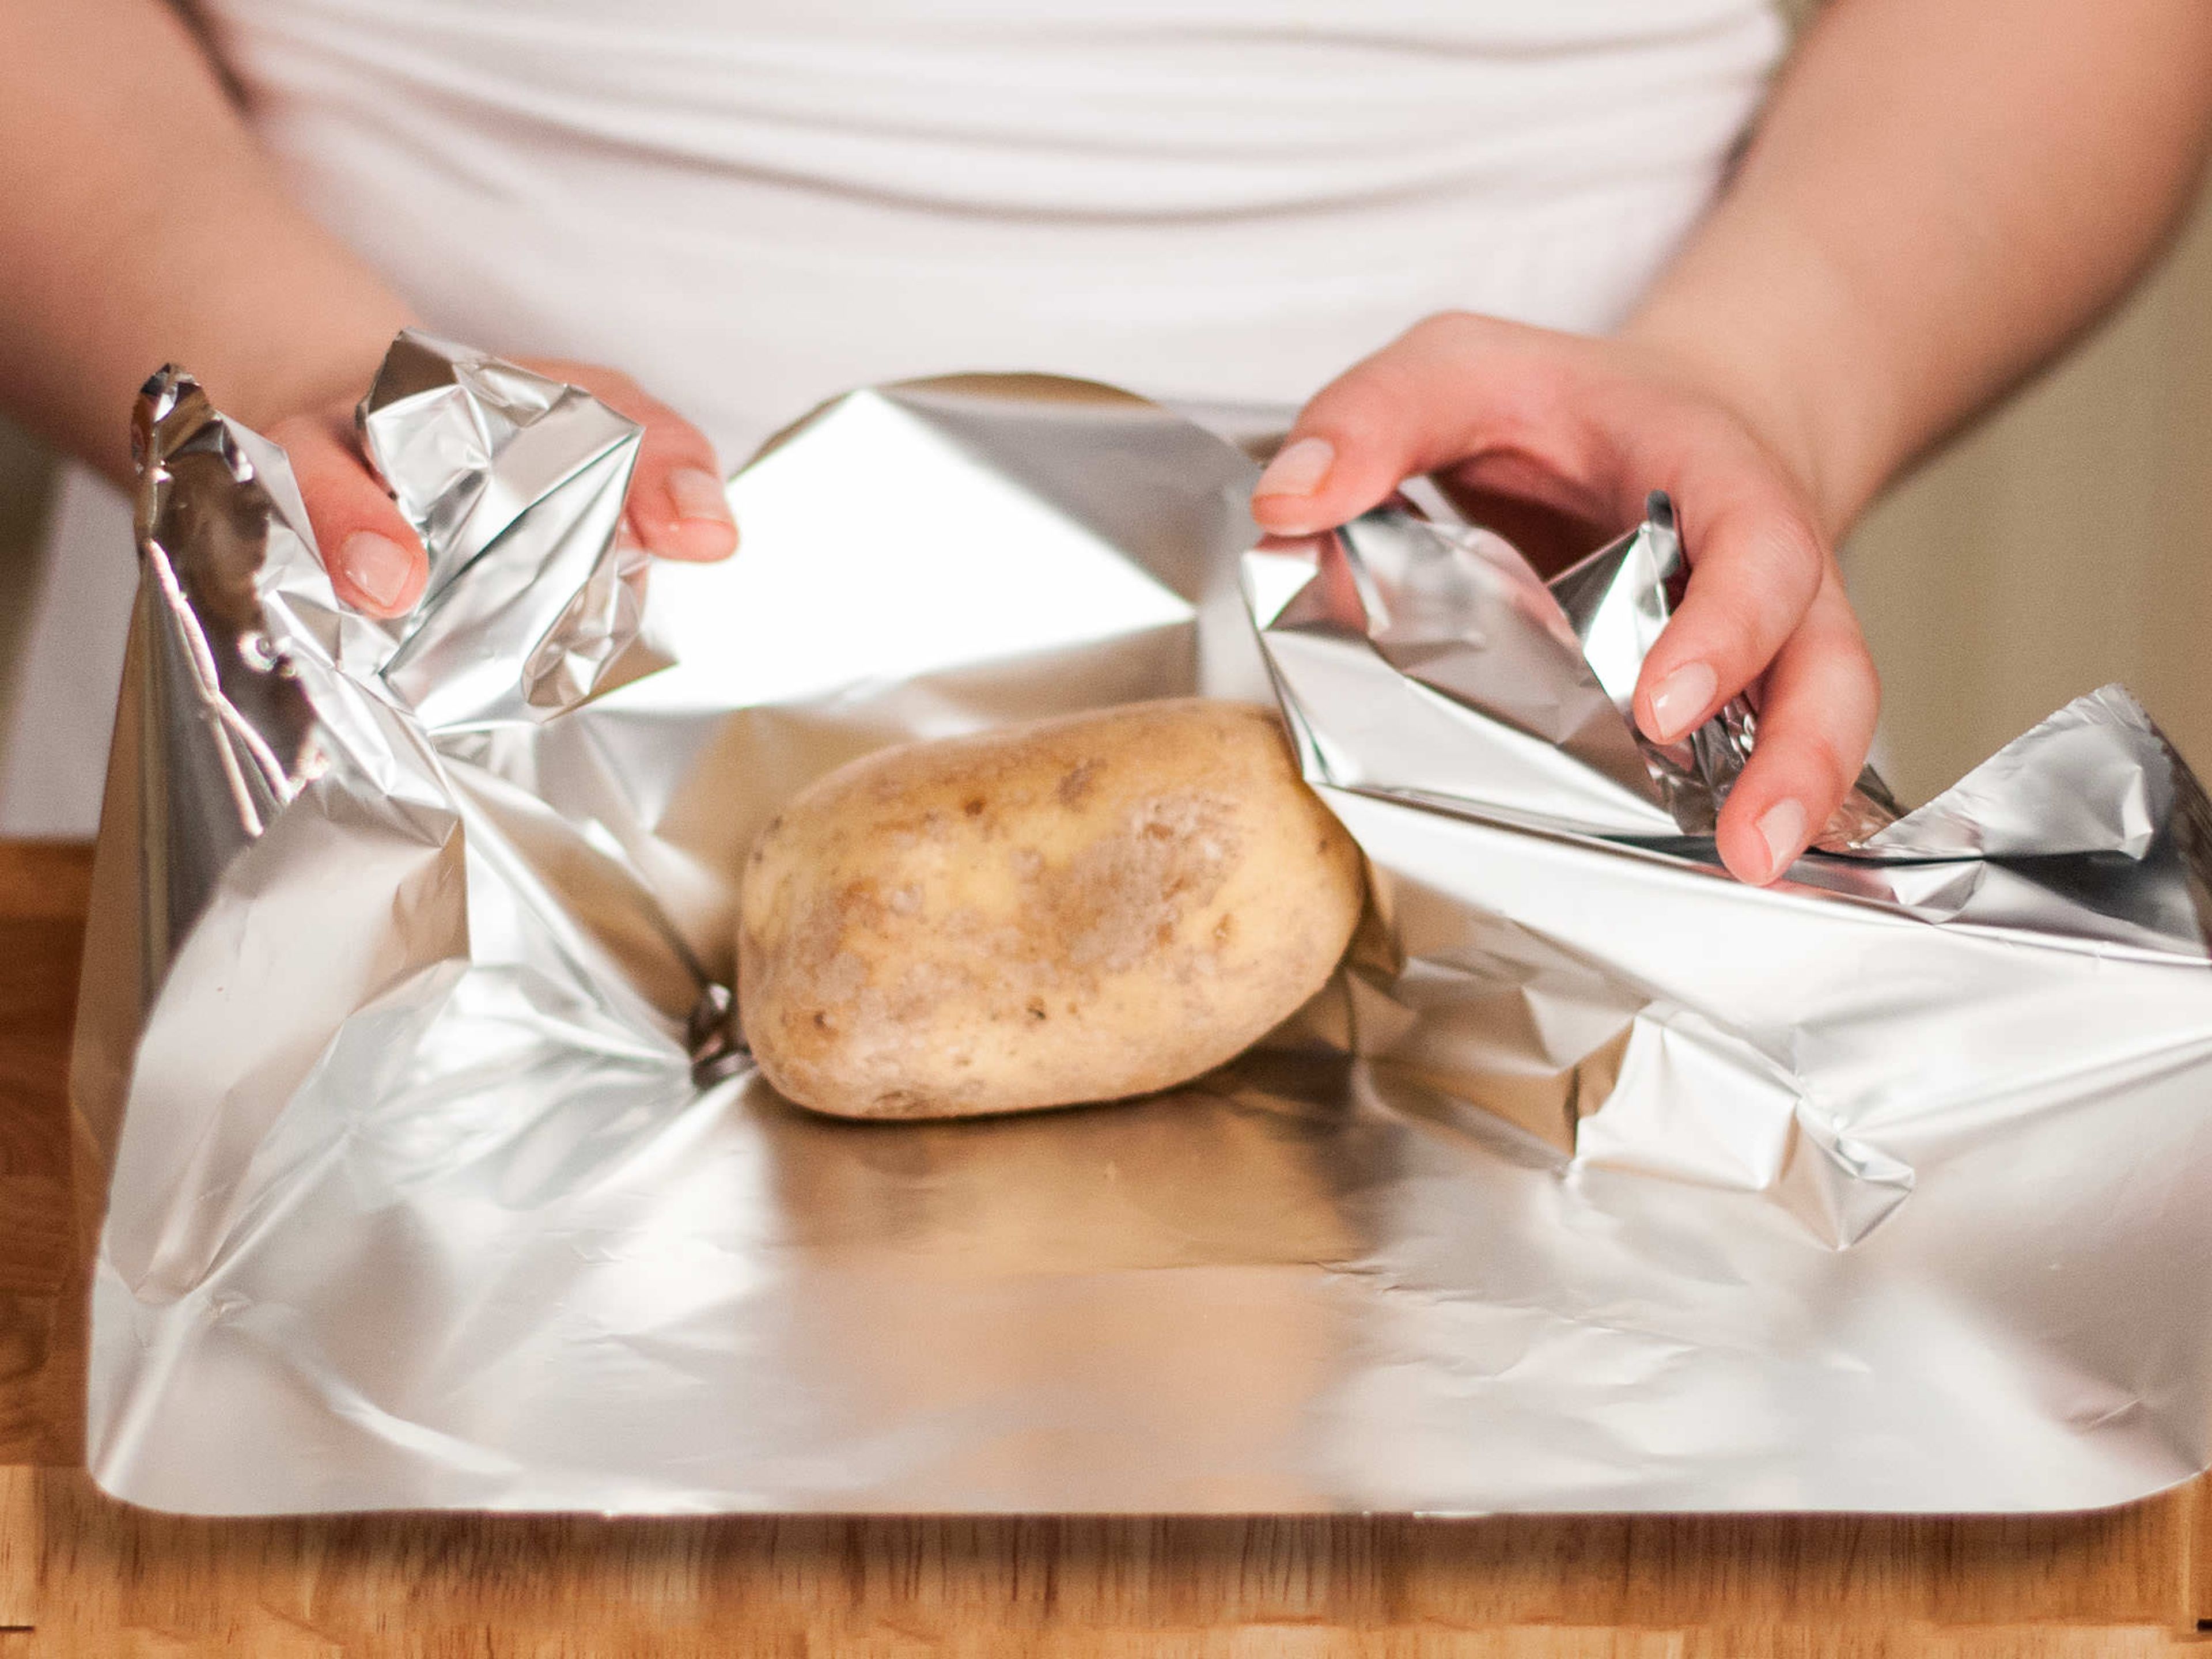 Backofen auf 60°C vorheizen. Grill vorheizen. Jede Kartoffel in Alufolie einwickeln und für ca. 1 h auf den Grill legen. Alle 20 Min. drehen damit sie gleichmäßig gegart werden.